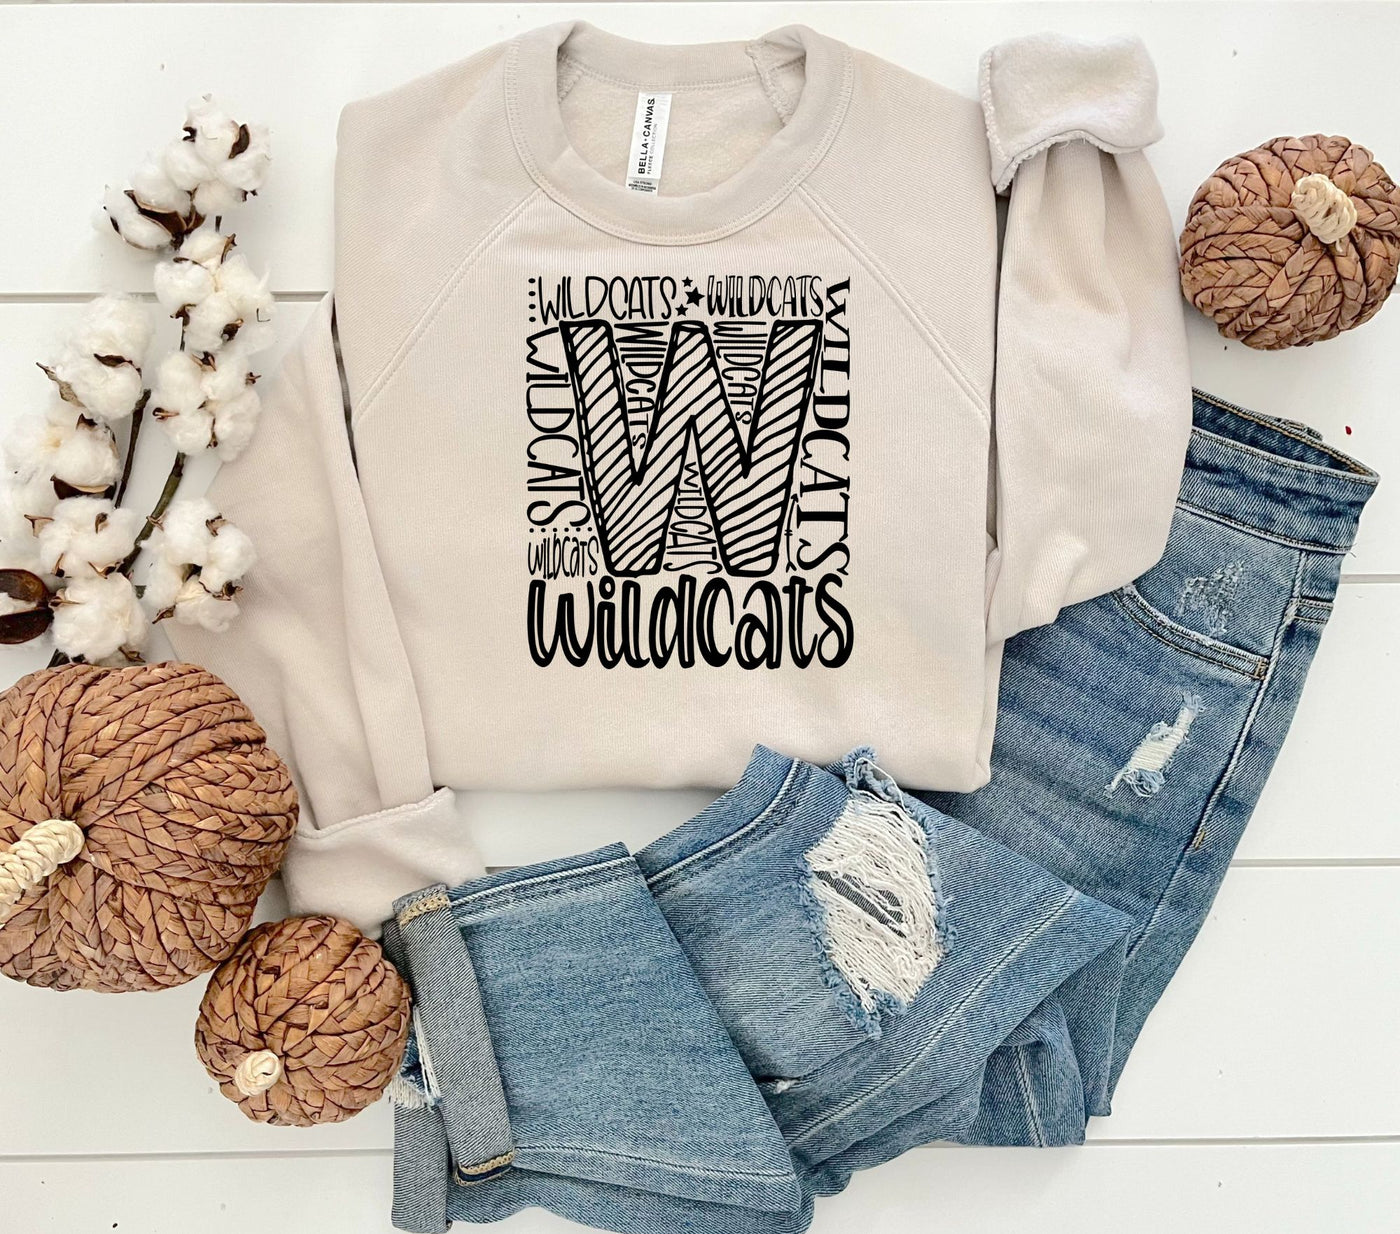 Wildcats Crewneck Sweatshirt